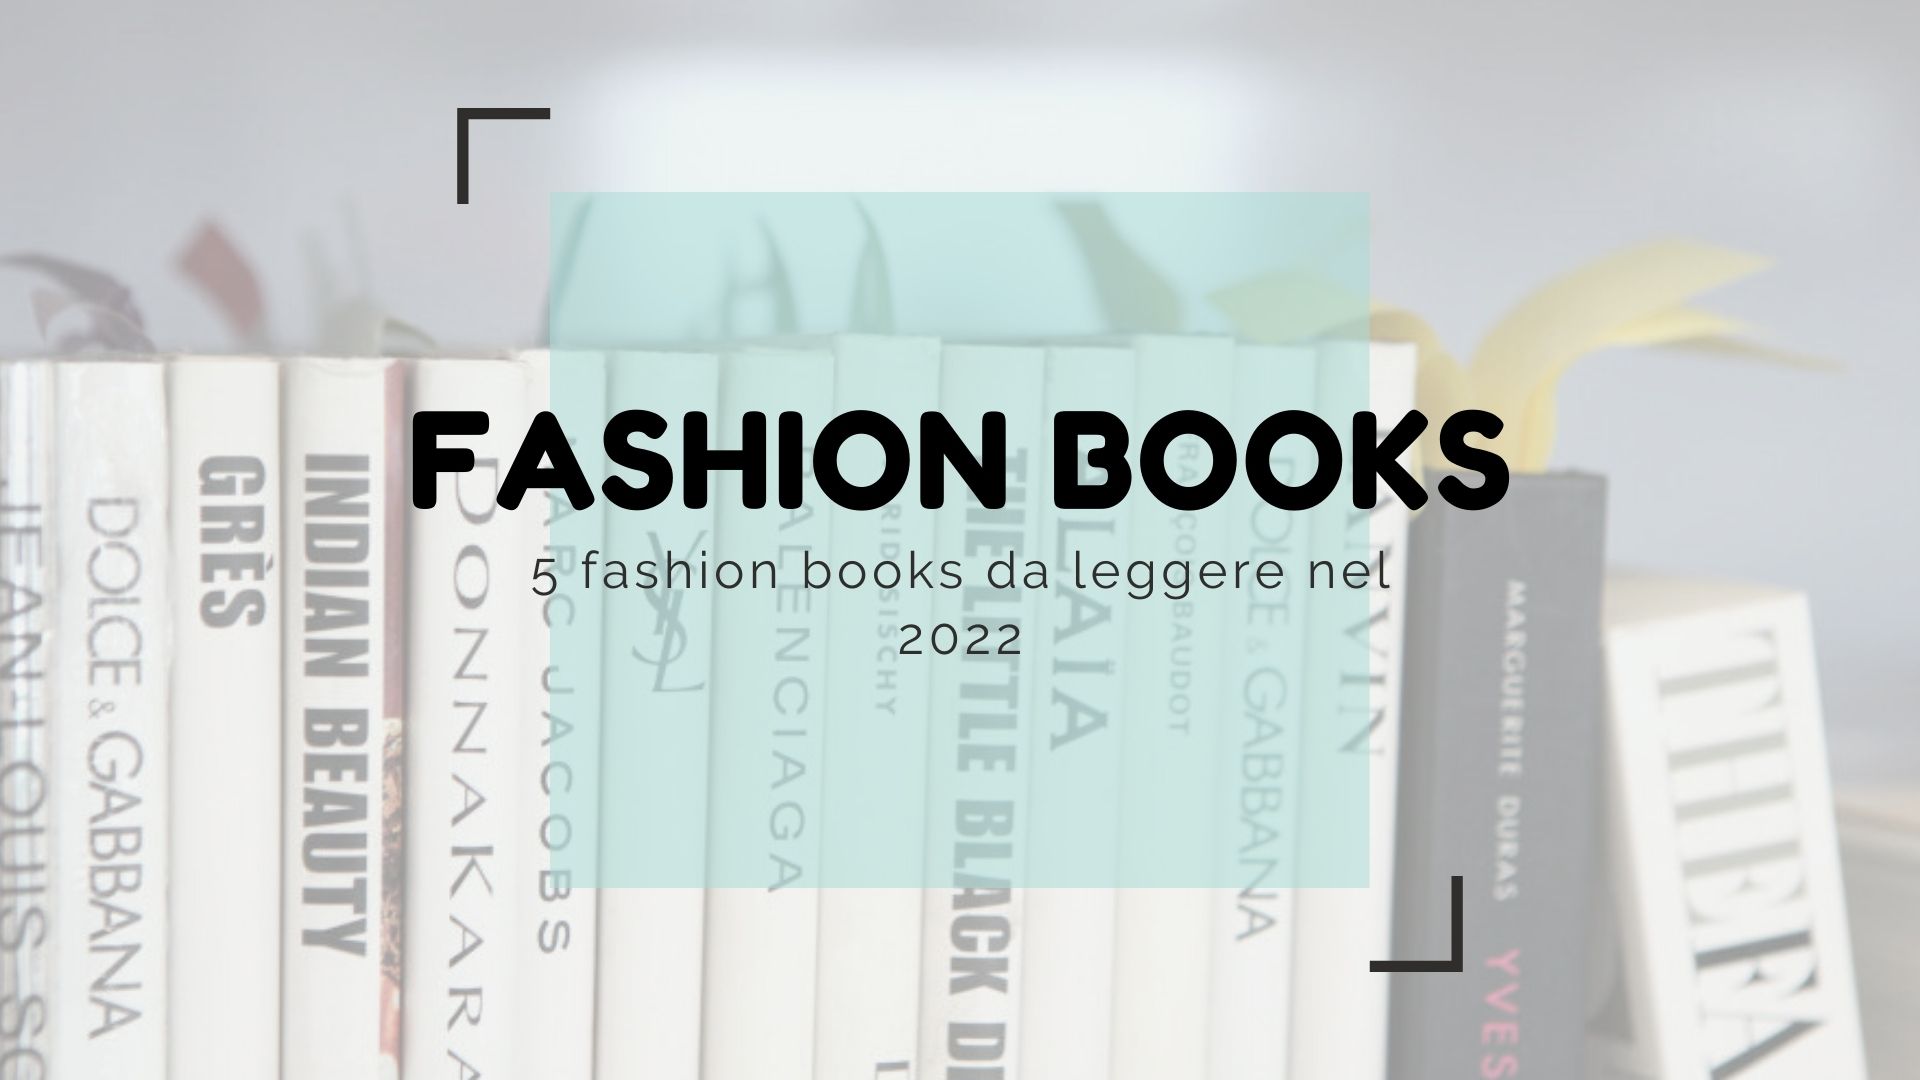 Fashion Books: 5 libri moda da leggere nel 2022 